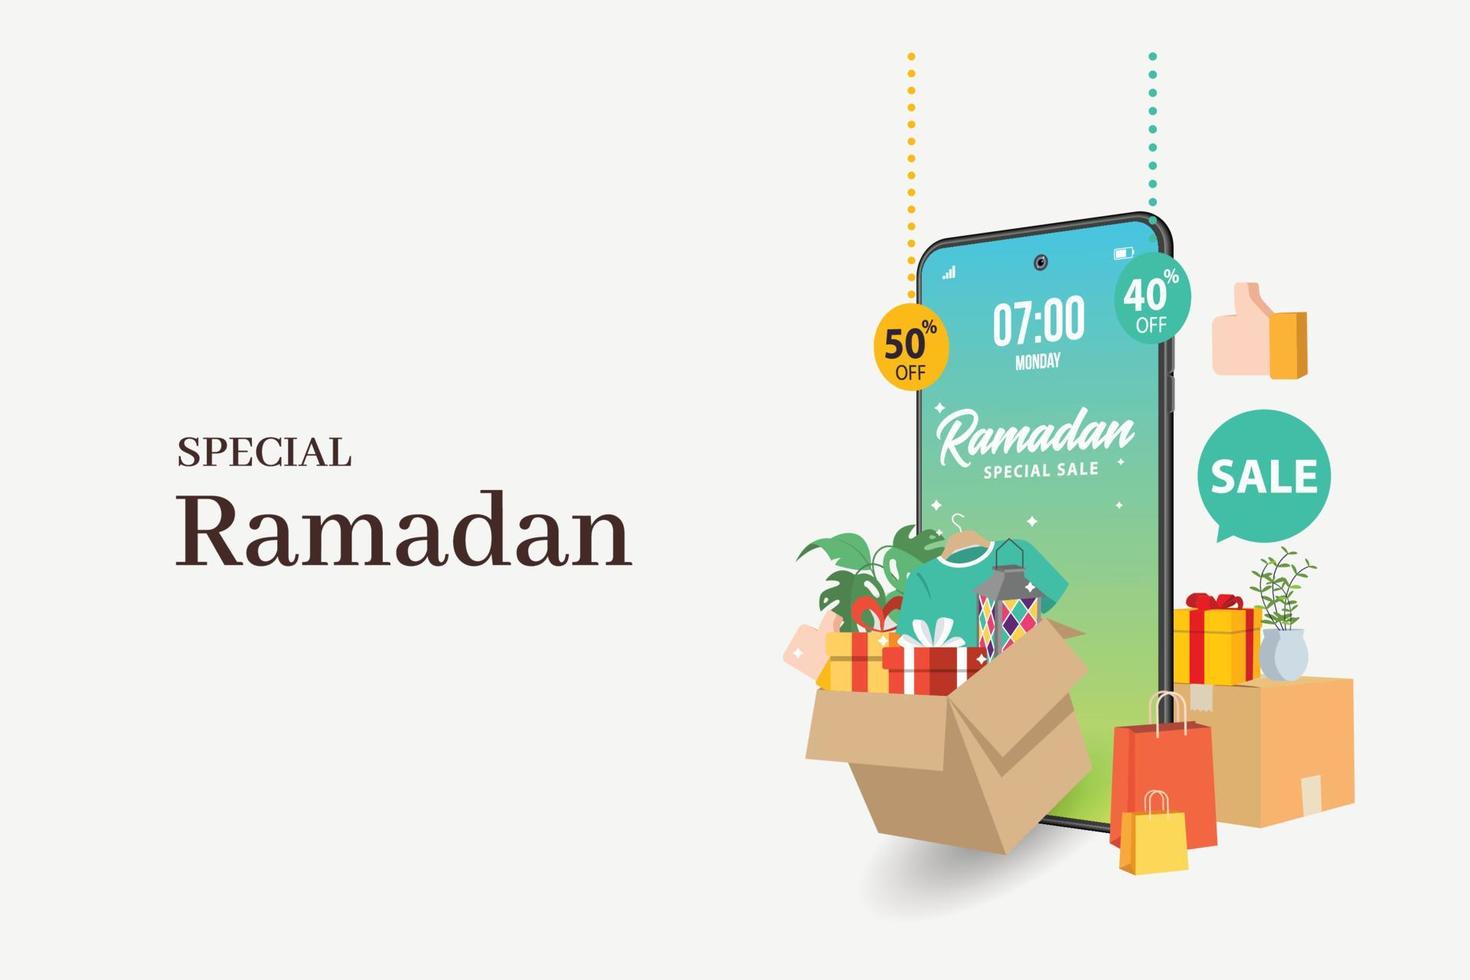 conjunto de banners de venda especial do ramadã, desconto e melhor etiqueta de oferta, etiqueta ou adesivo definido por ocasião do ramadan kareem e eid mubarak, ilustração vetorial vetor